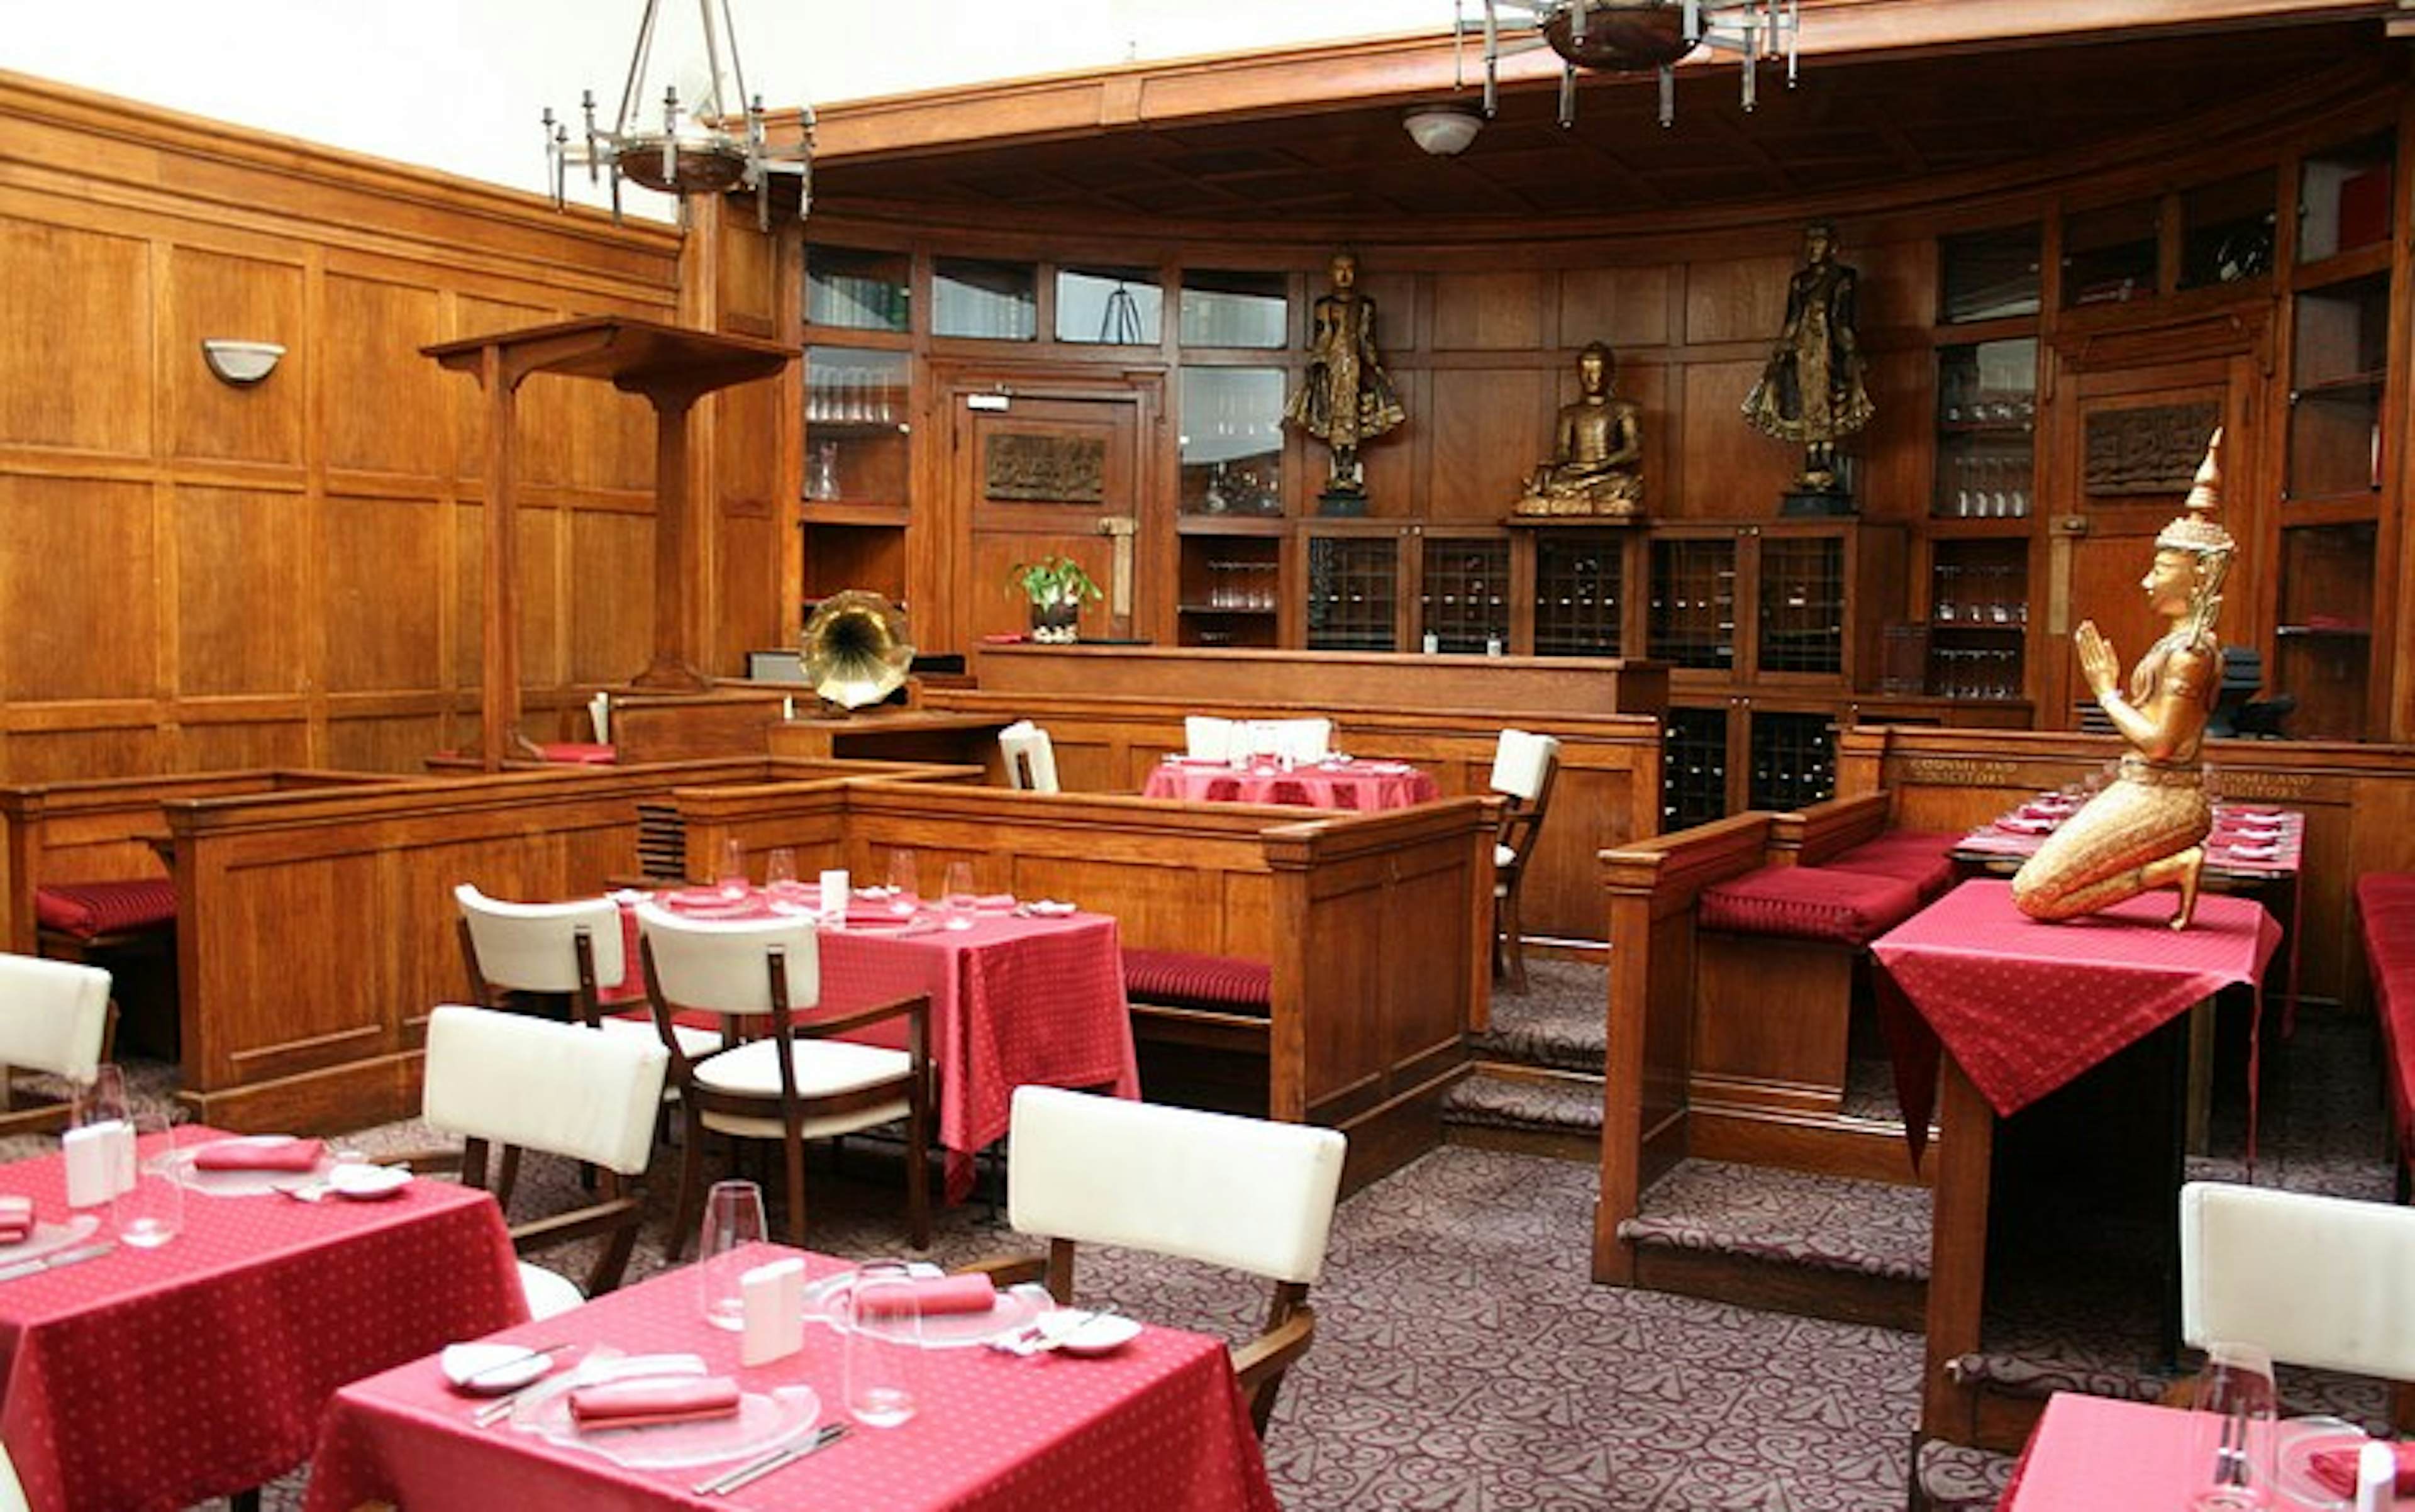 Courthouse Hotel - Soho - Silk Restaurant image 1